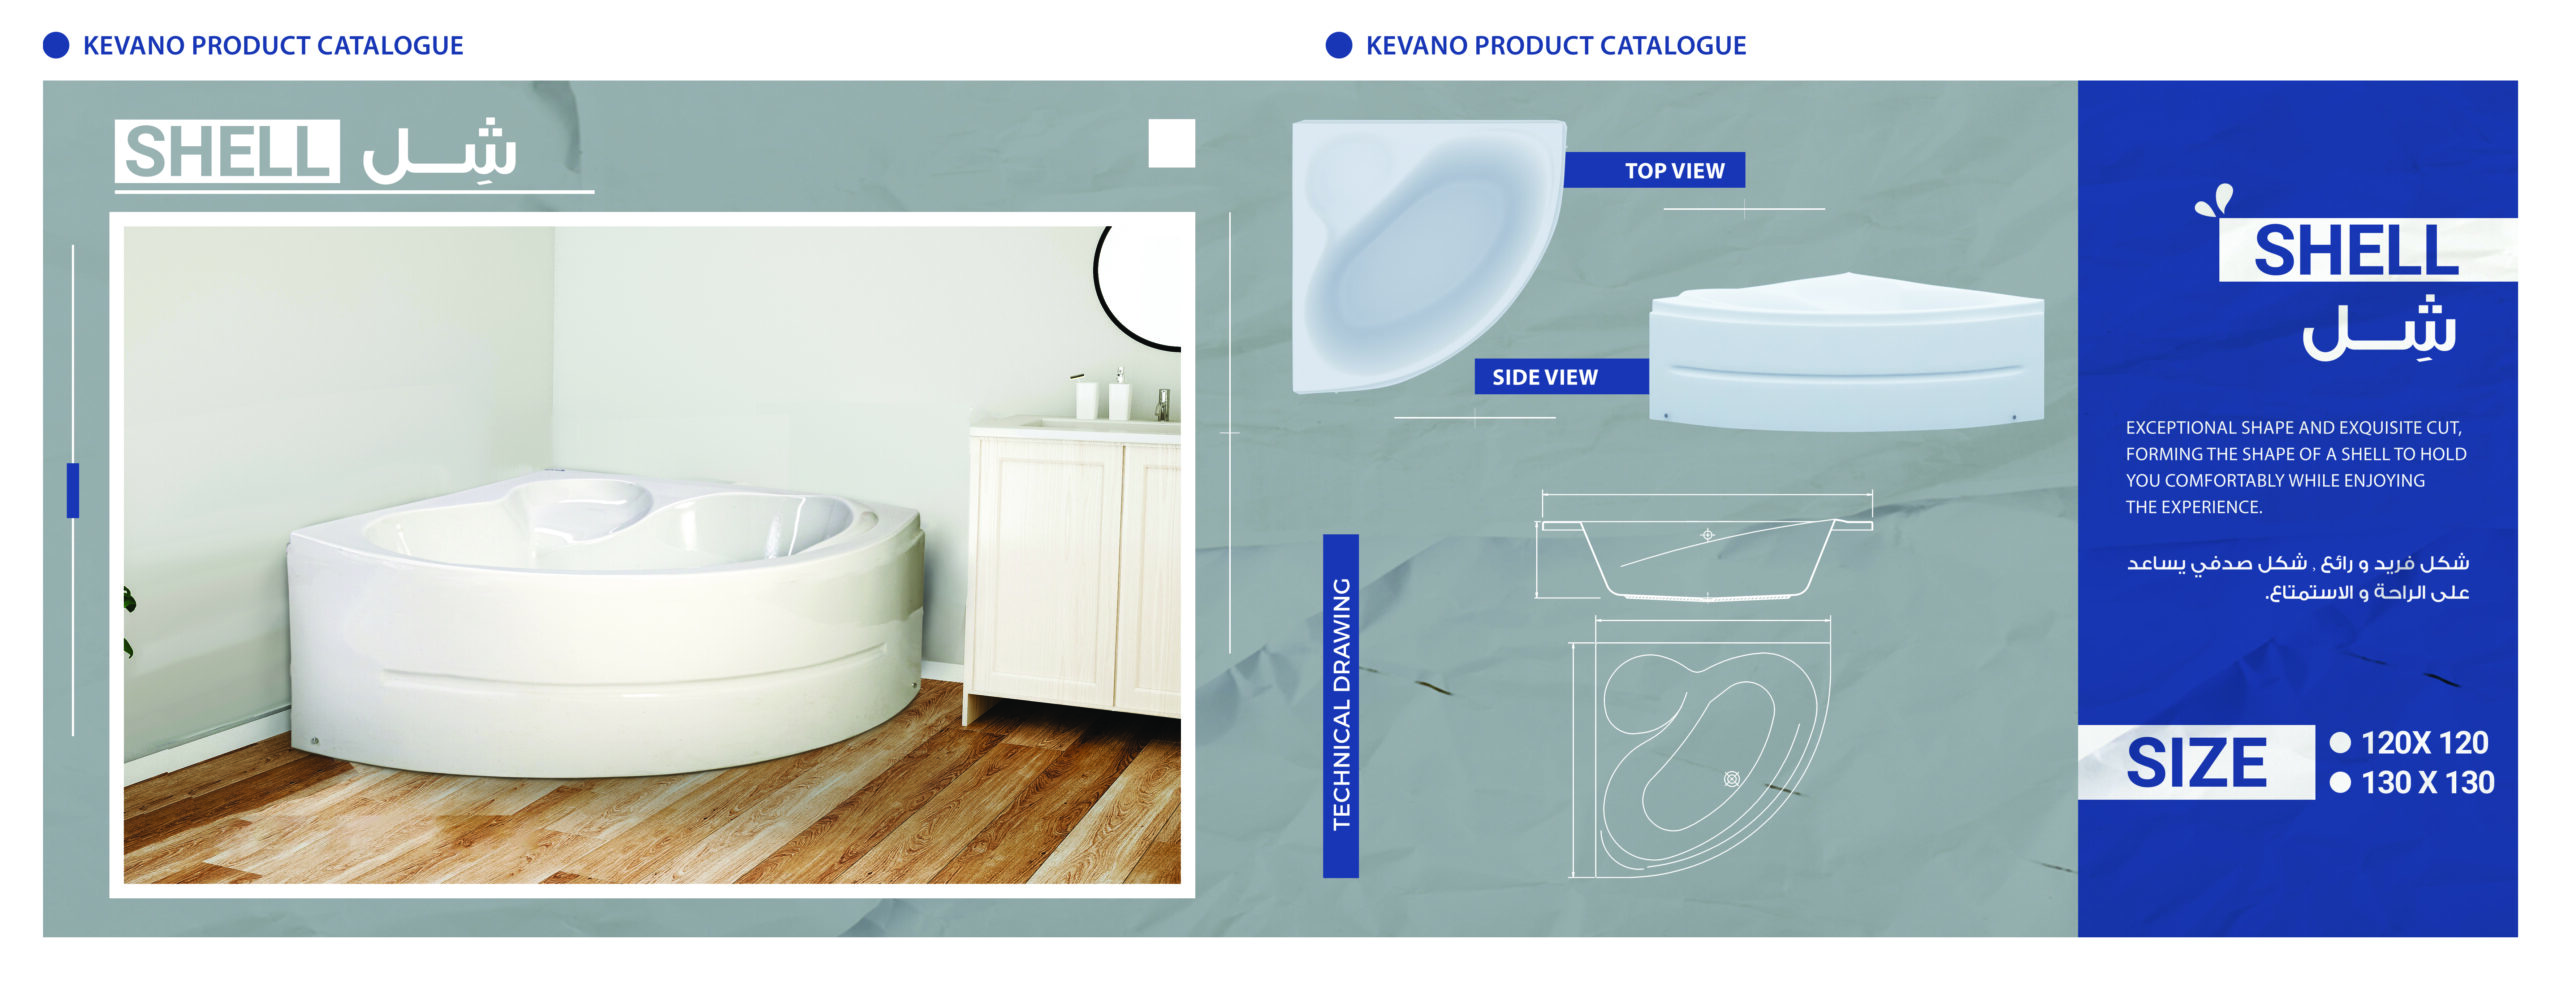 shell-acrylic-bathtub-design-comfort-luxury